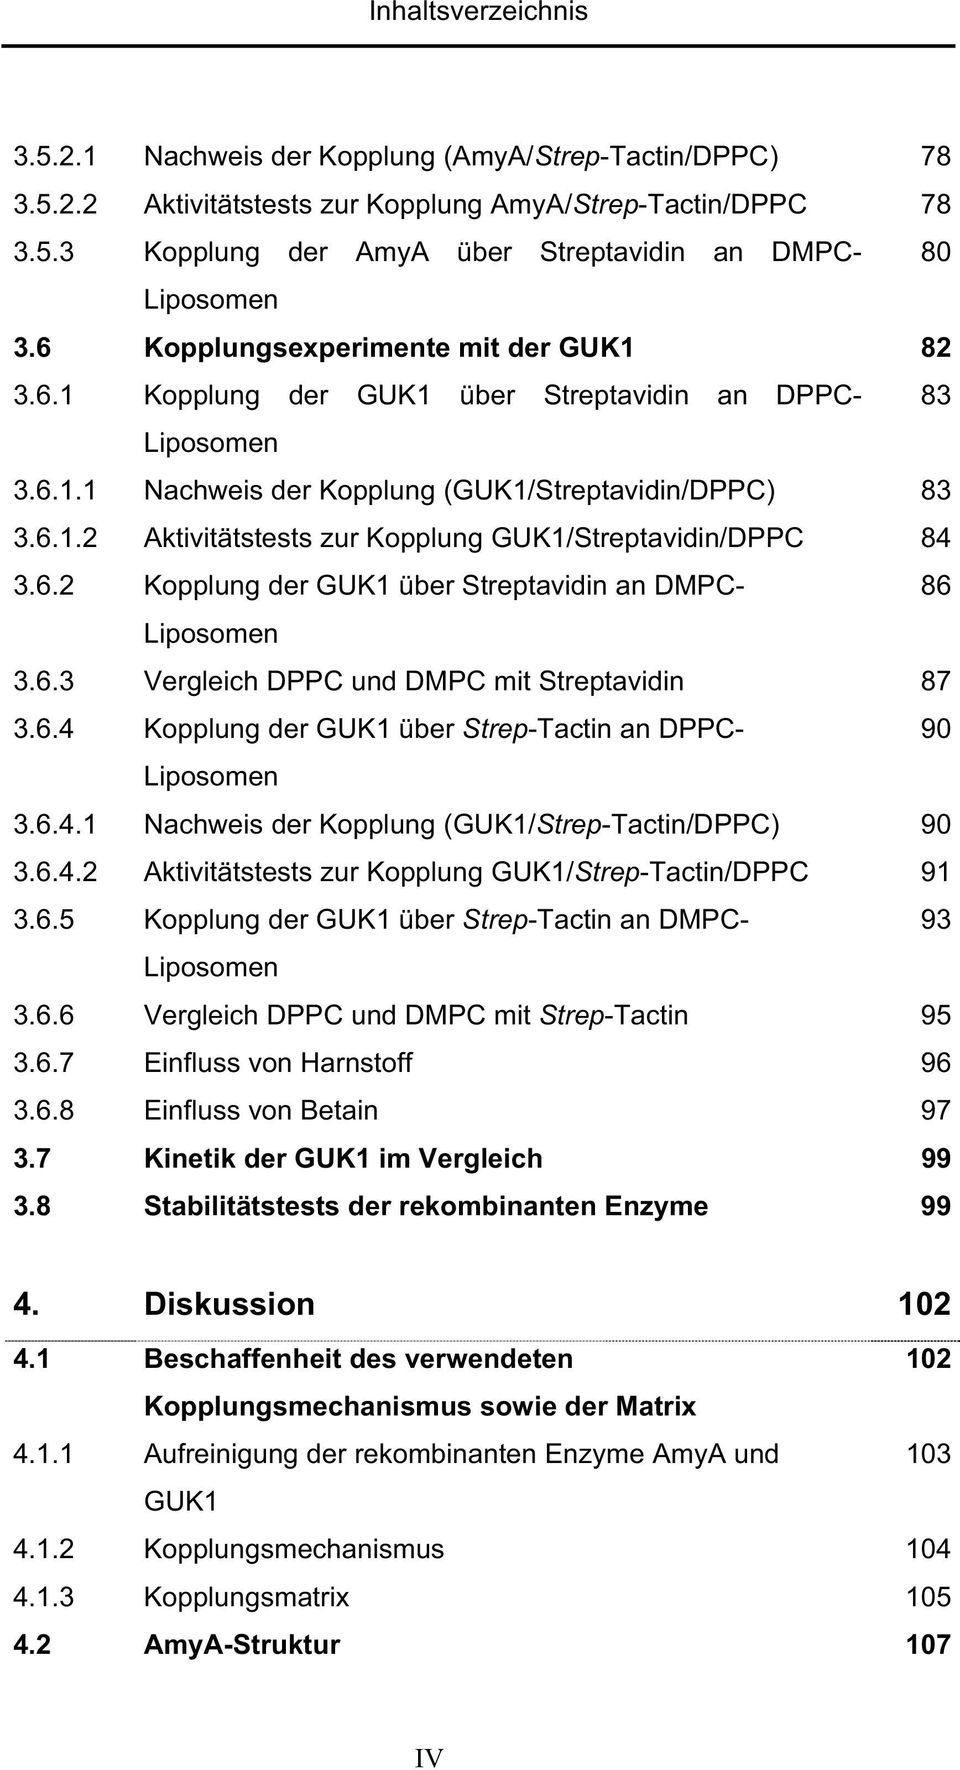 6.2 Kopplung der GUK1 über Streptavidin an DMPC- 86 3.6.3 Vergleich DPPC und DMPC mit Streptavidin 87 3.6.4 Kopplung der GUK1 über Strep-Tactin an DPPC- 90 3.6.4.1 Nachweis der Kopplung (GUK1/Strep-Tactin/DPPC) 90 3.